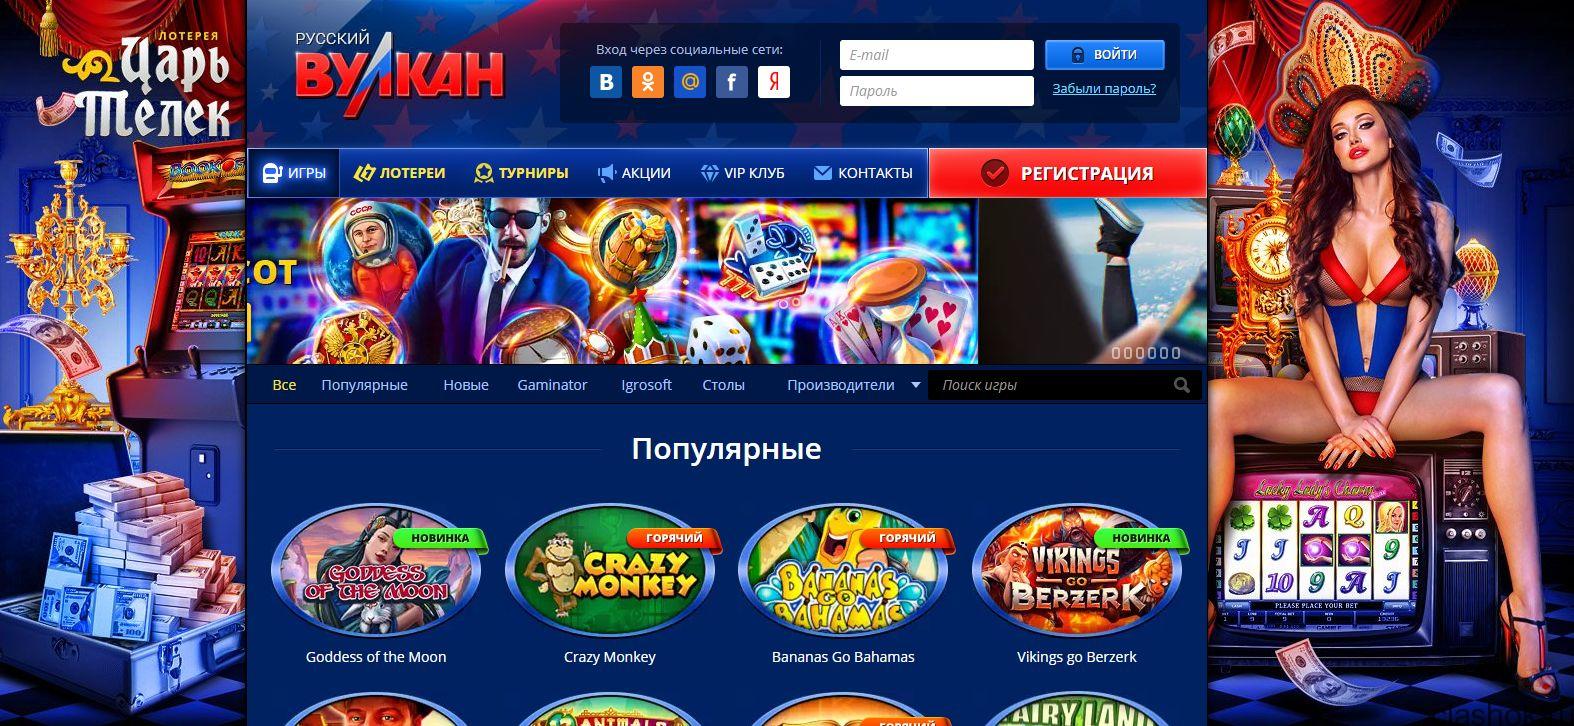 Русское казино вулкан официальный сайт xbet с игровыми автоматами скачать бесплатно